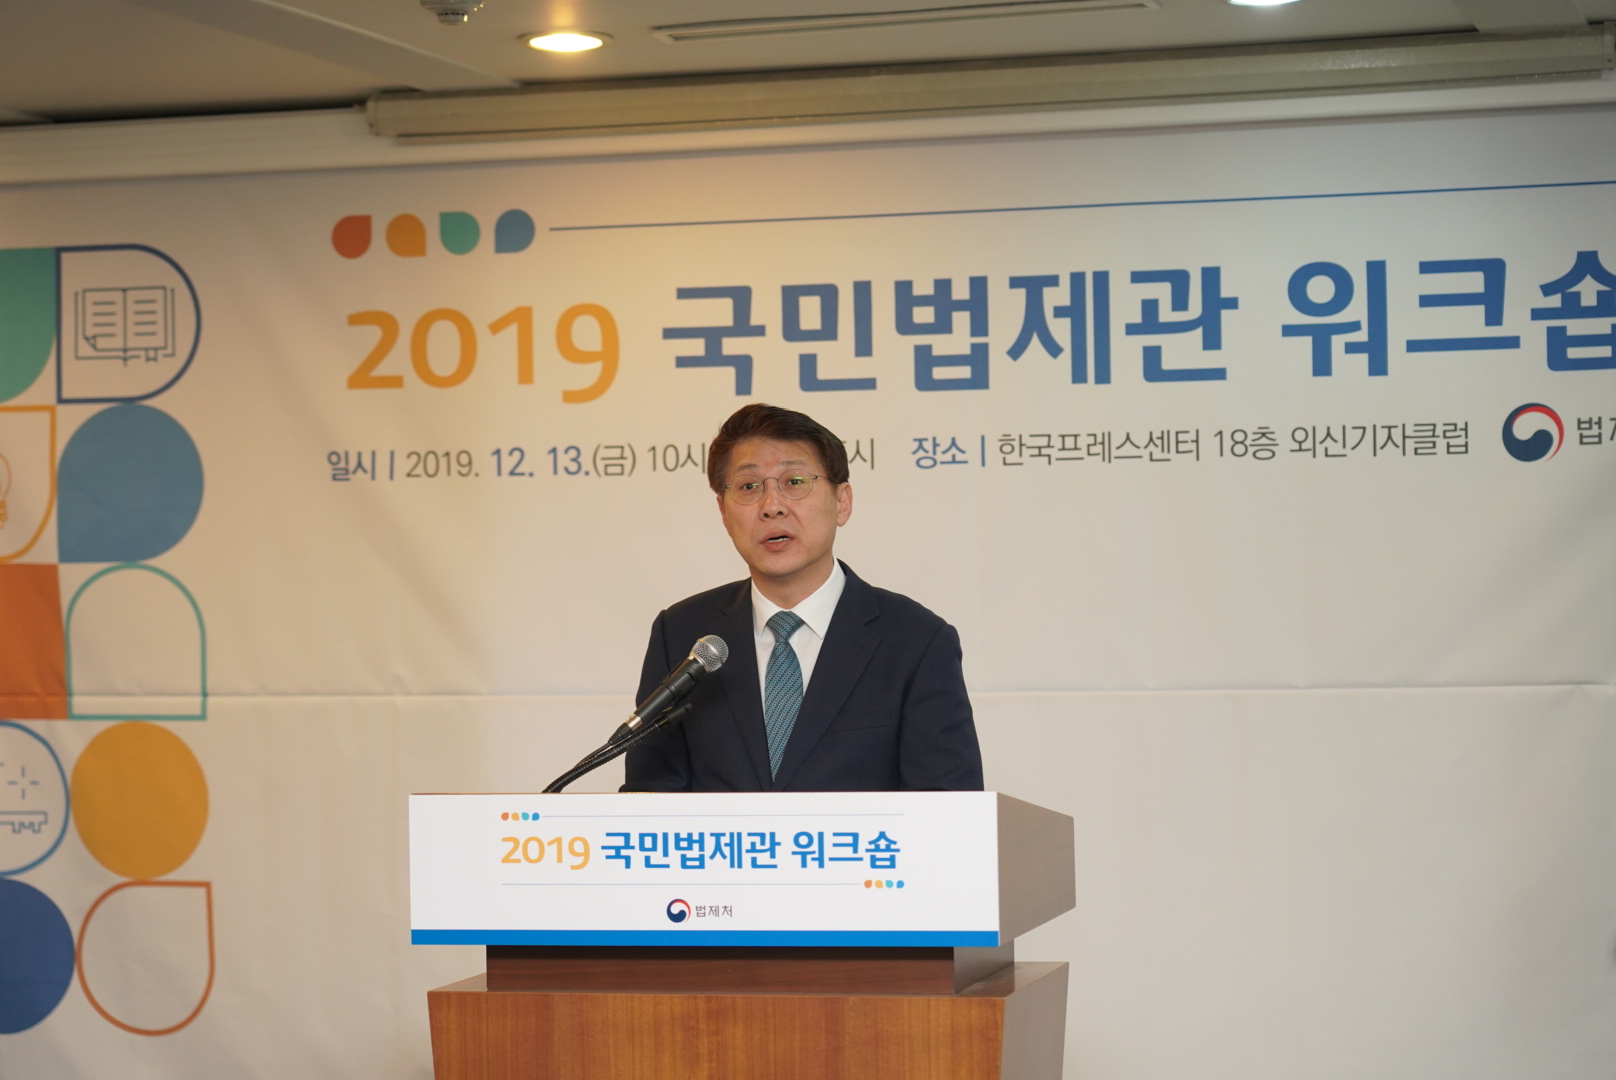 2019 국민법제관 워크숍에 참석한 김형연 법제처장 사진1